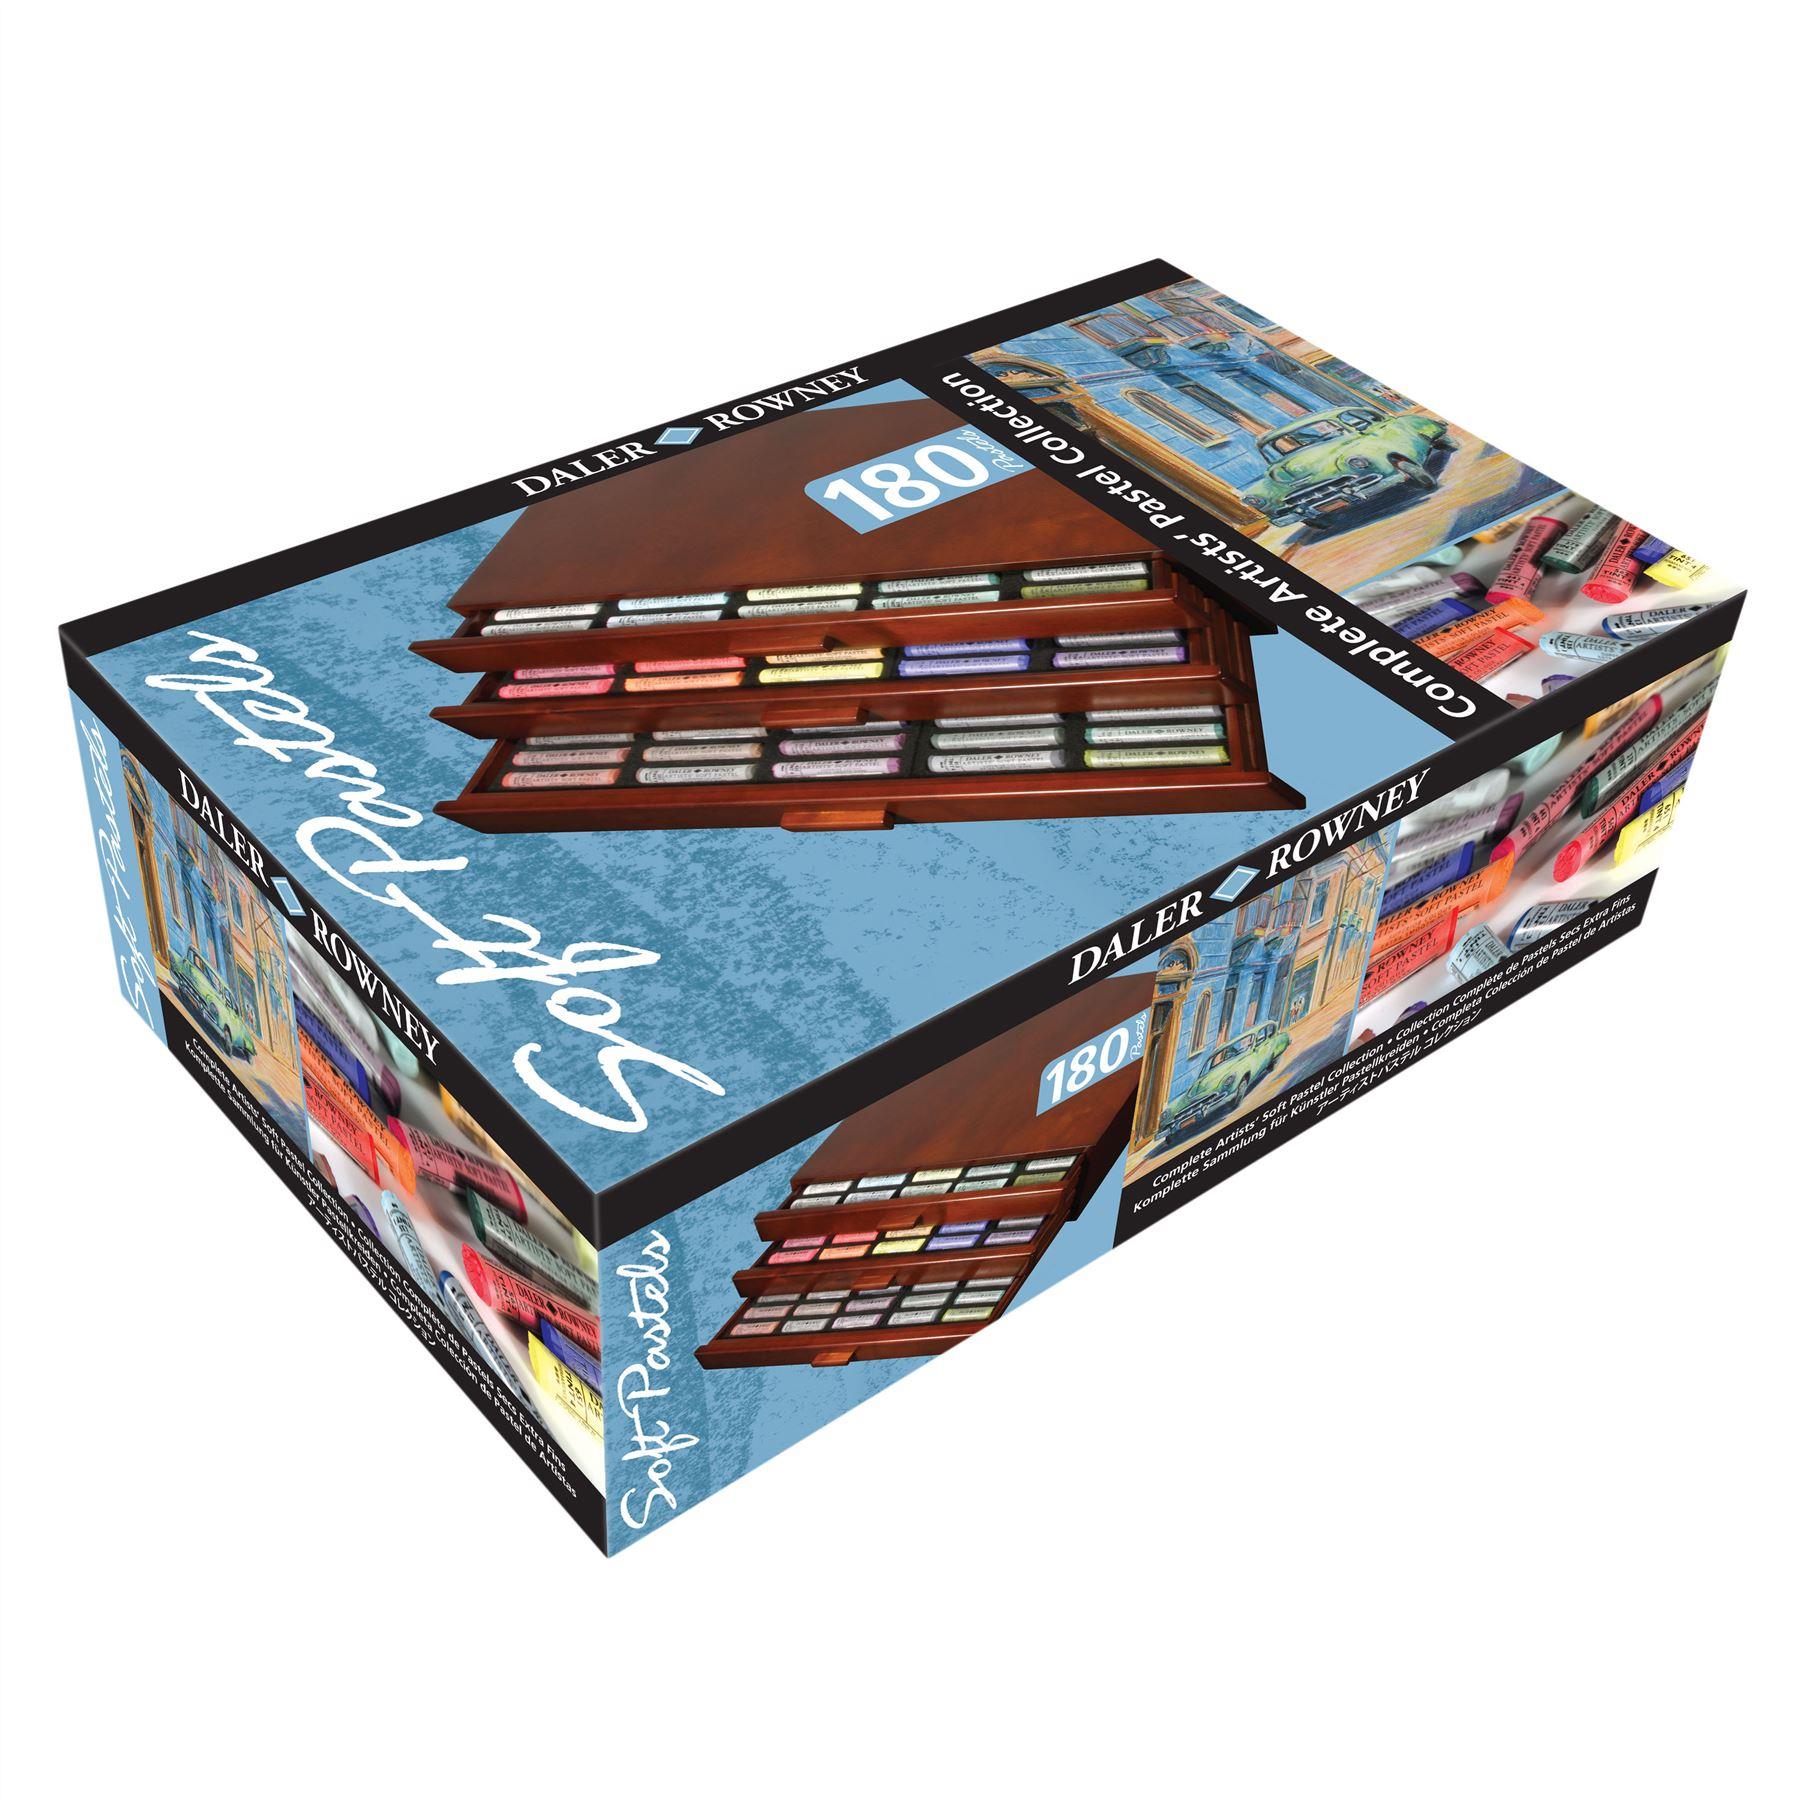 Daler Rowney complete soft pastels wooden box set